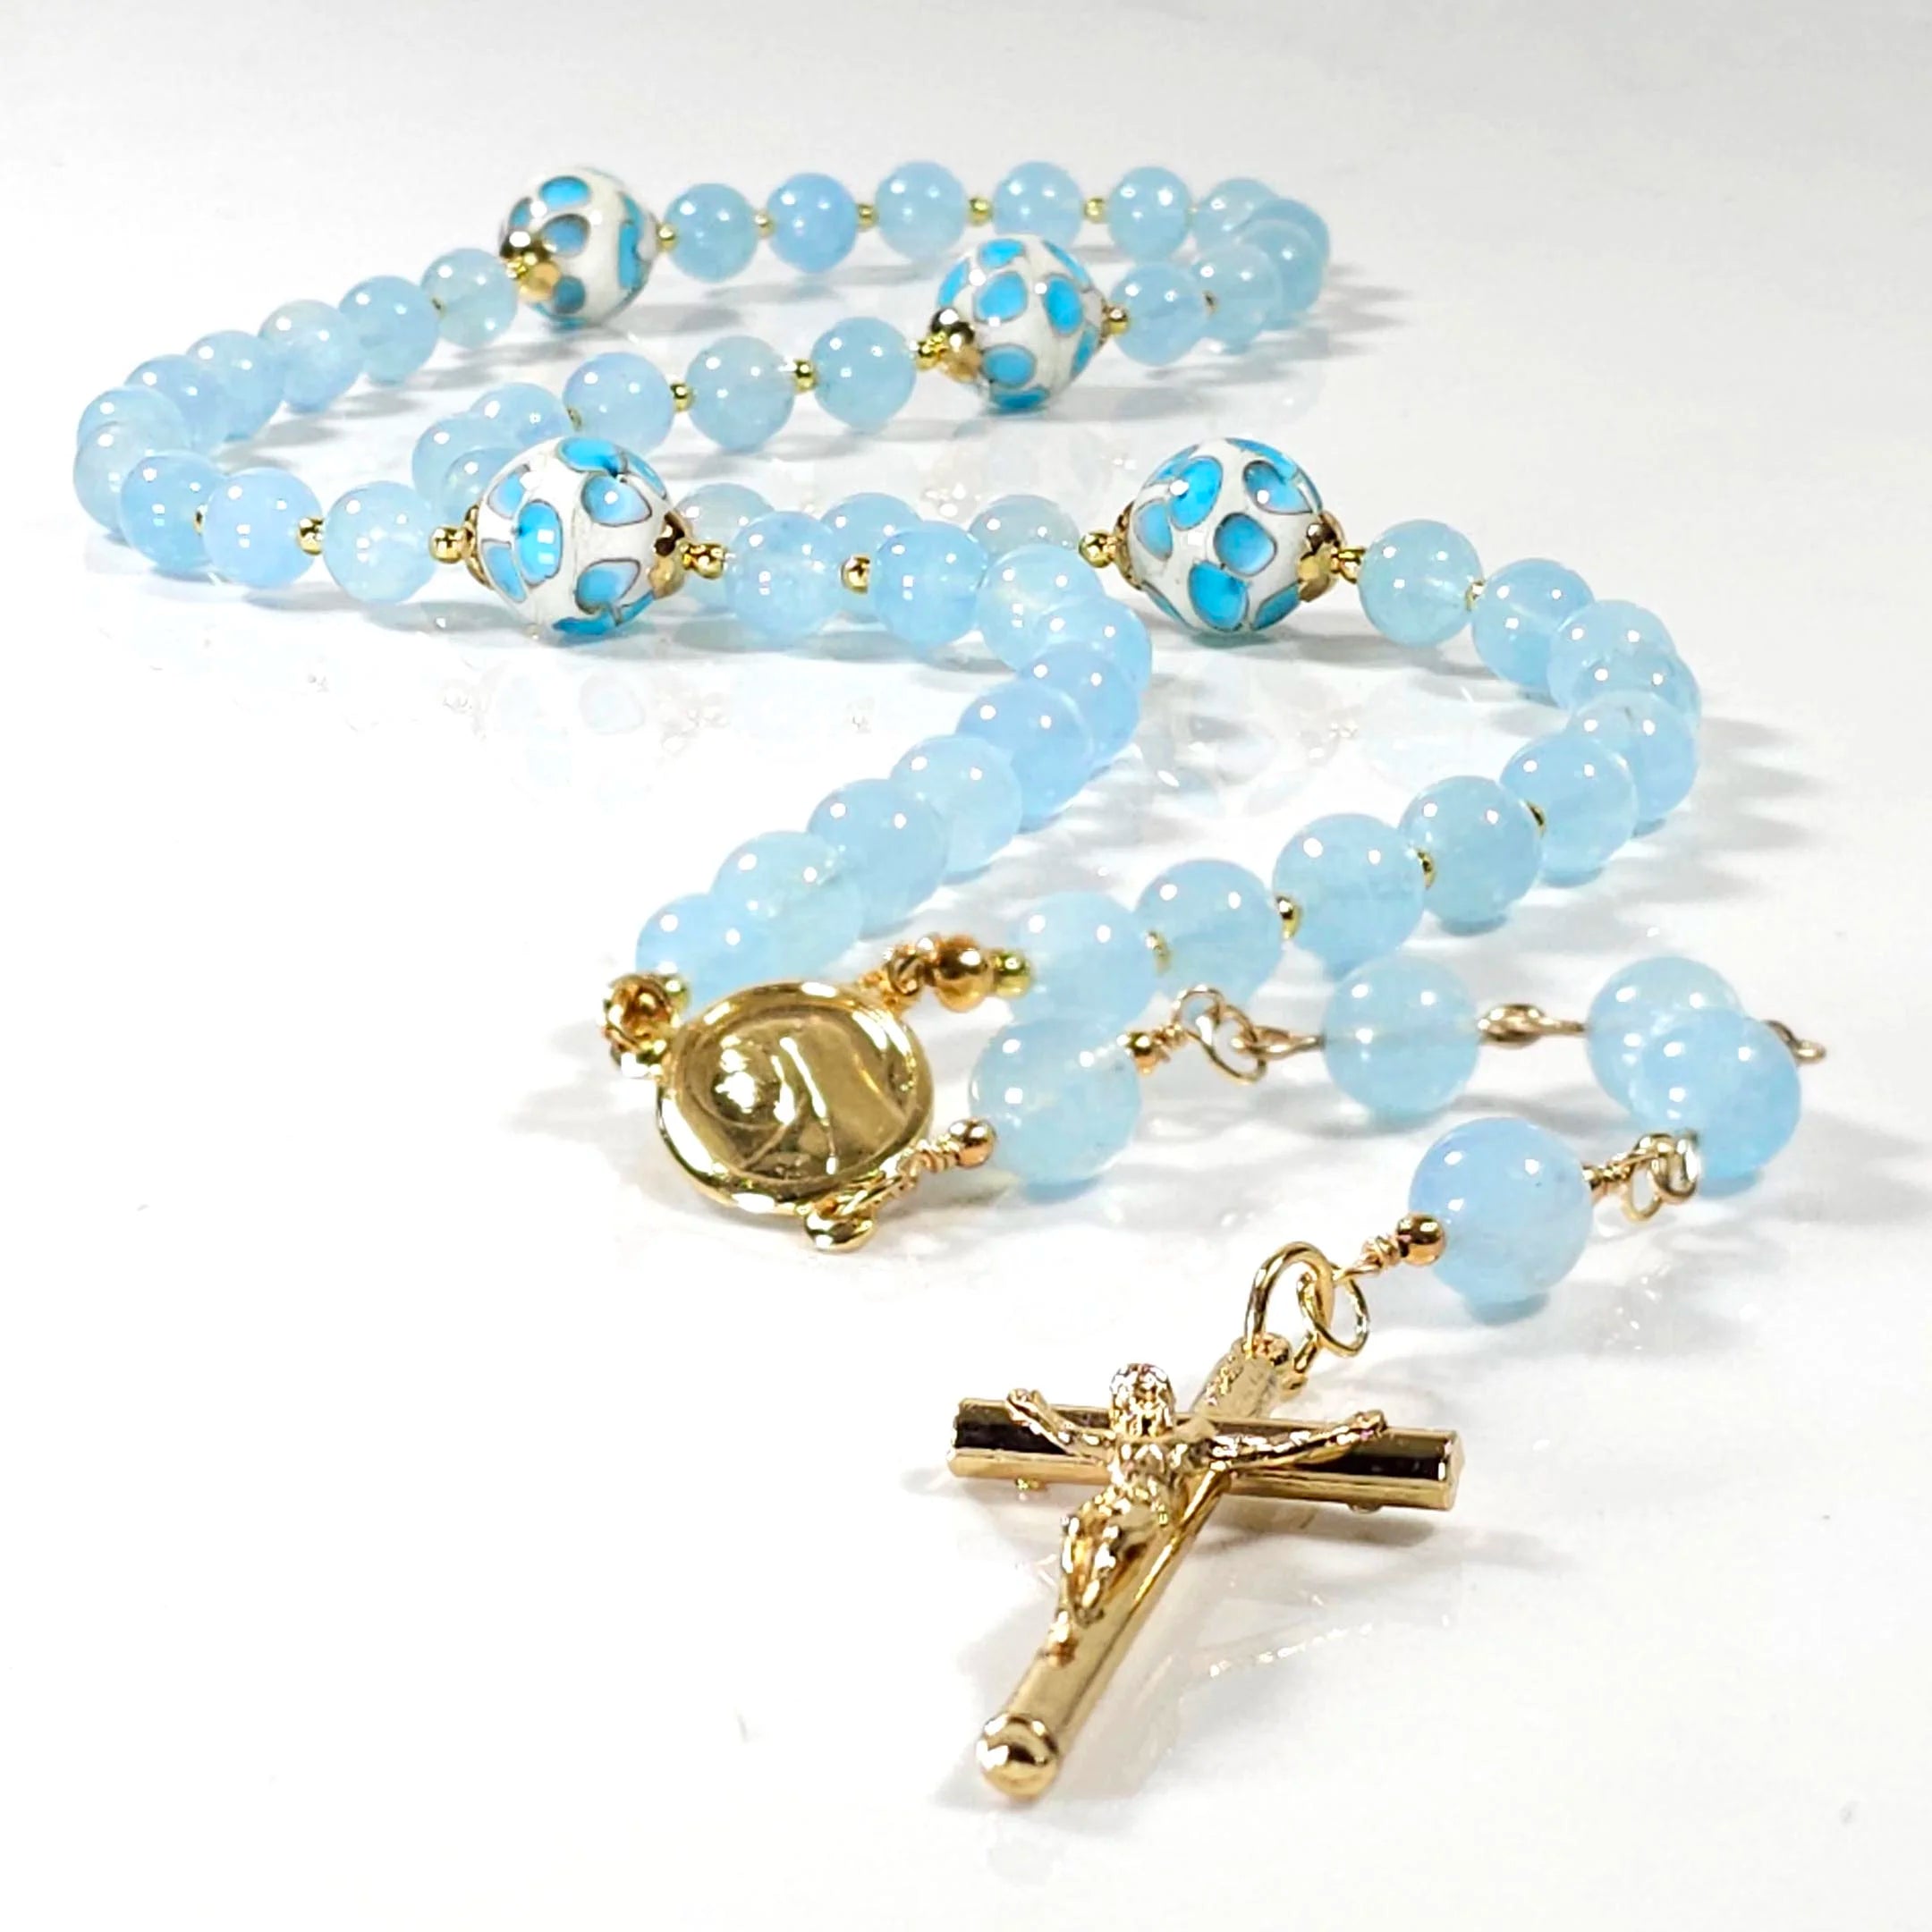 Mary garden rosary.